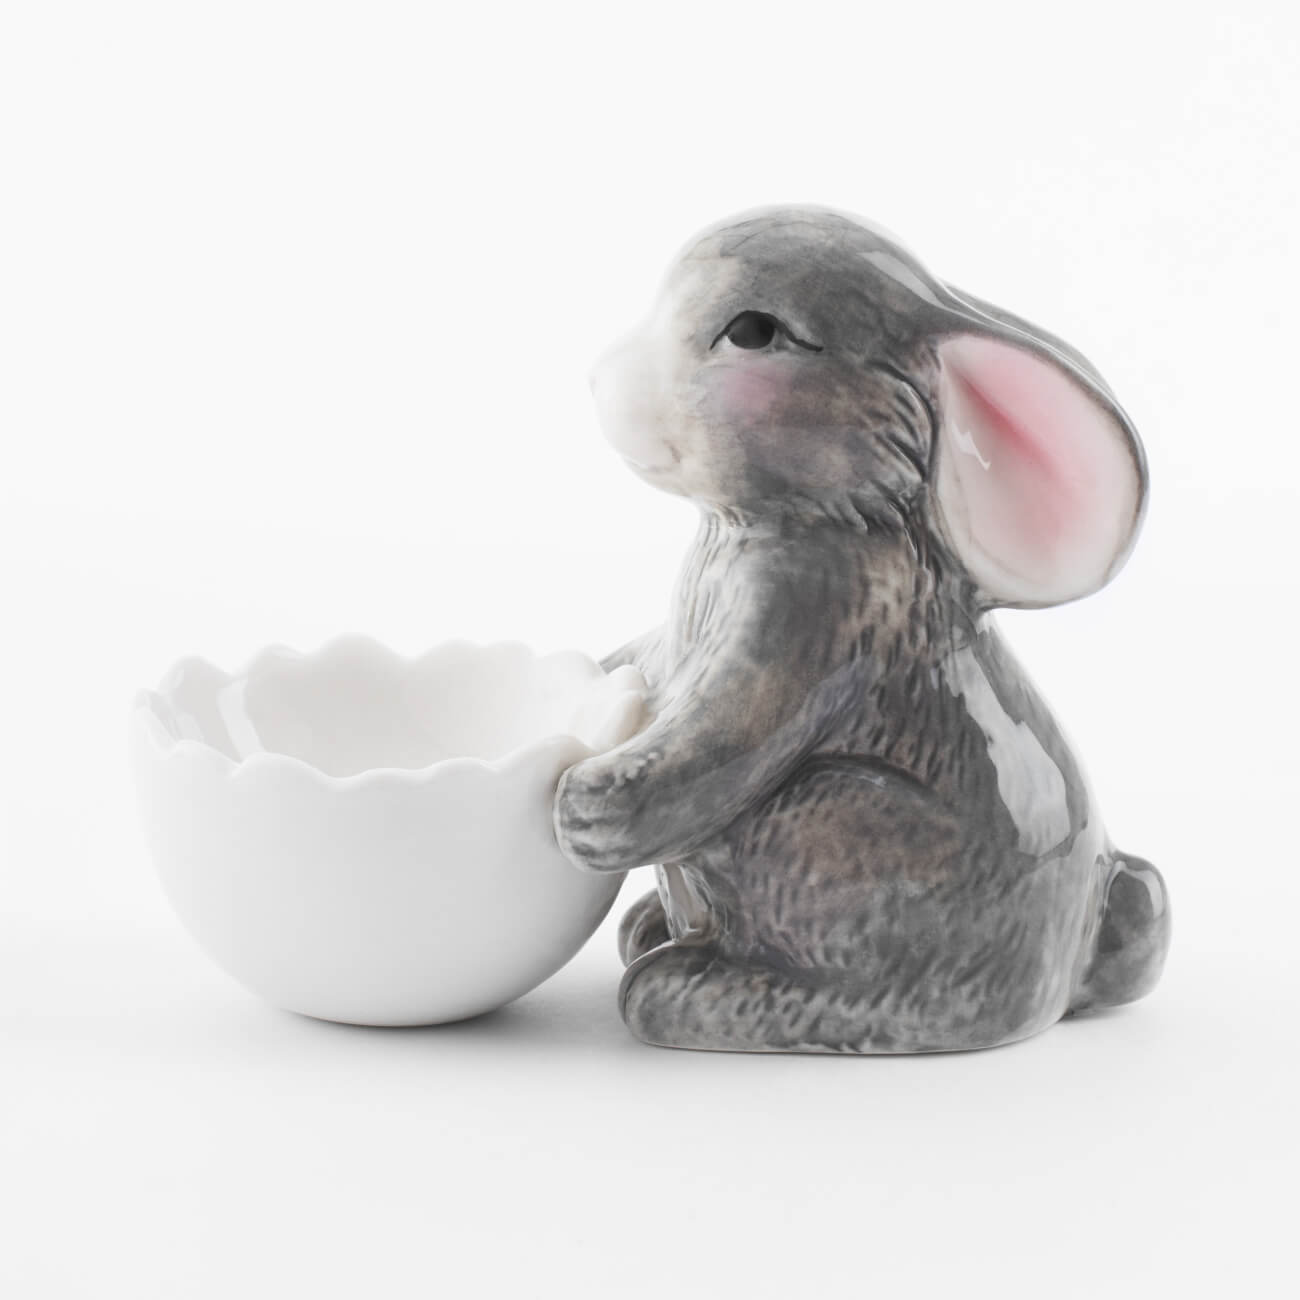 Подставка для яйца, 11 см, фарфор P, бело-серая, Кролик со скорлупой, Pure Easter галета для стула плюш 40х40 см бело серая